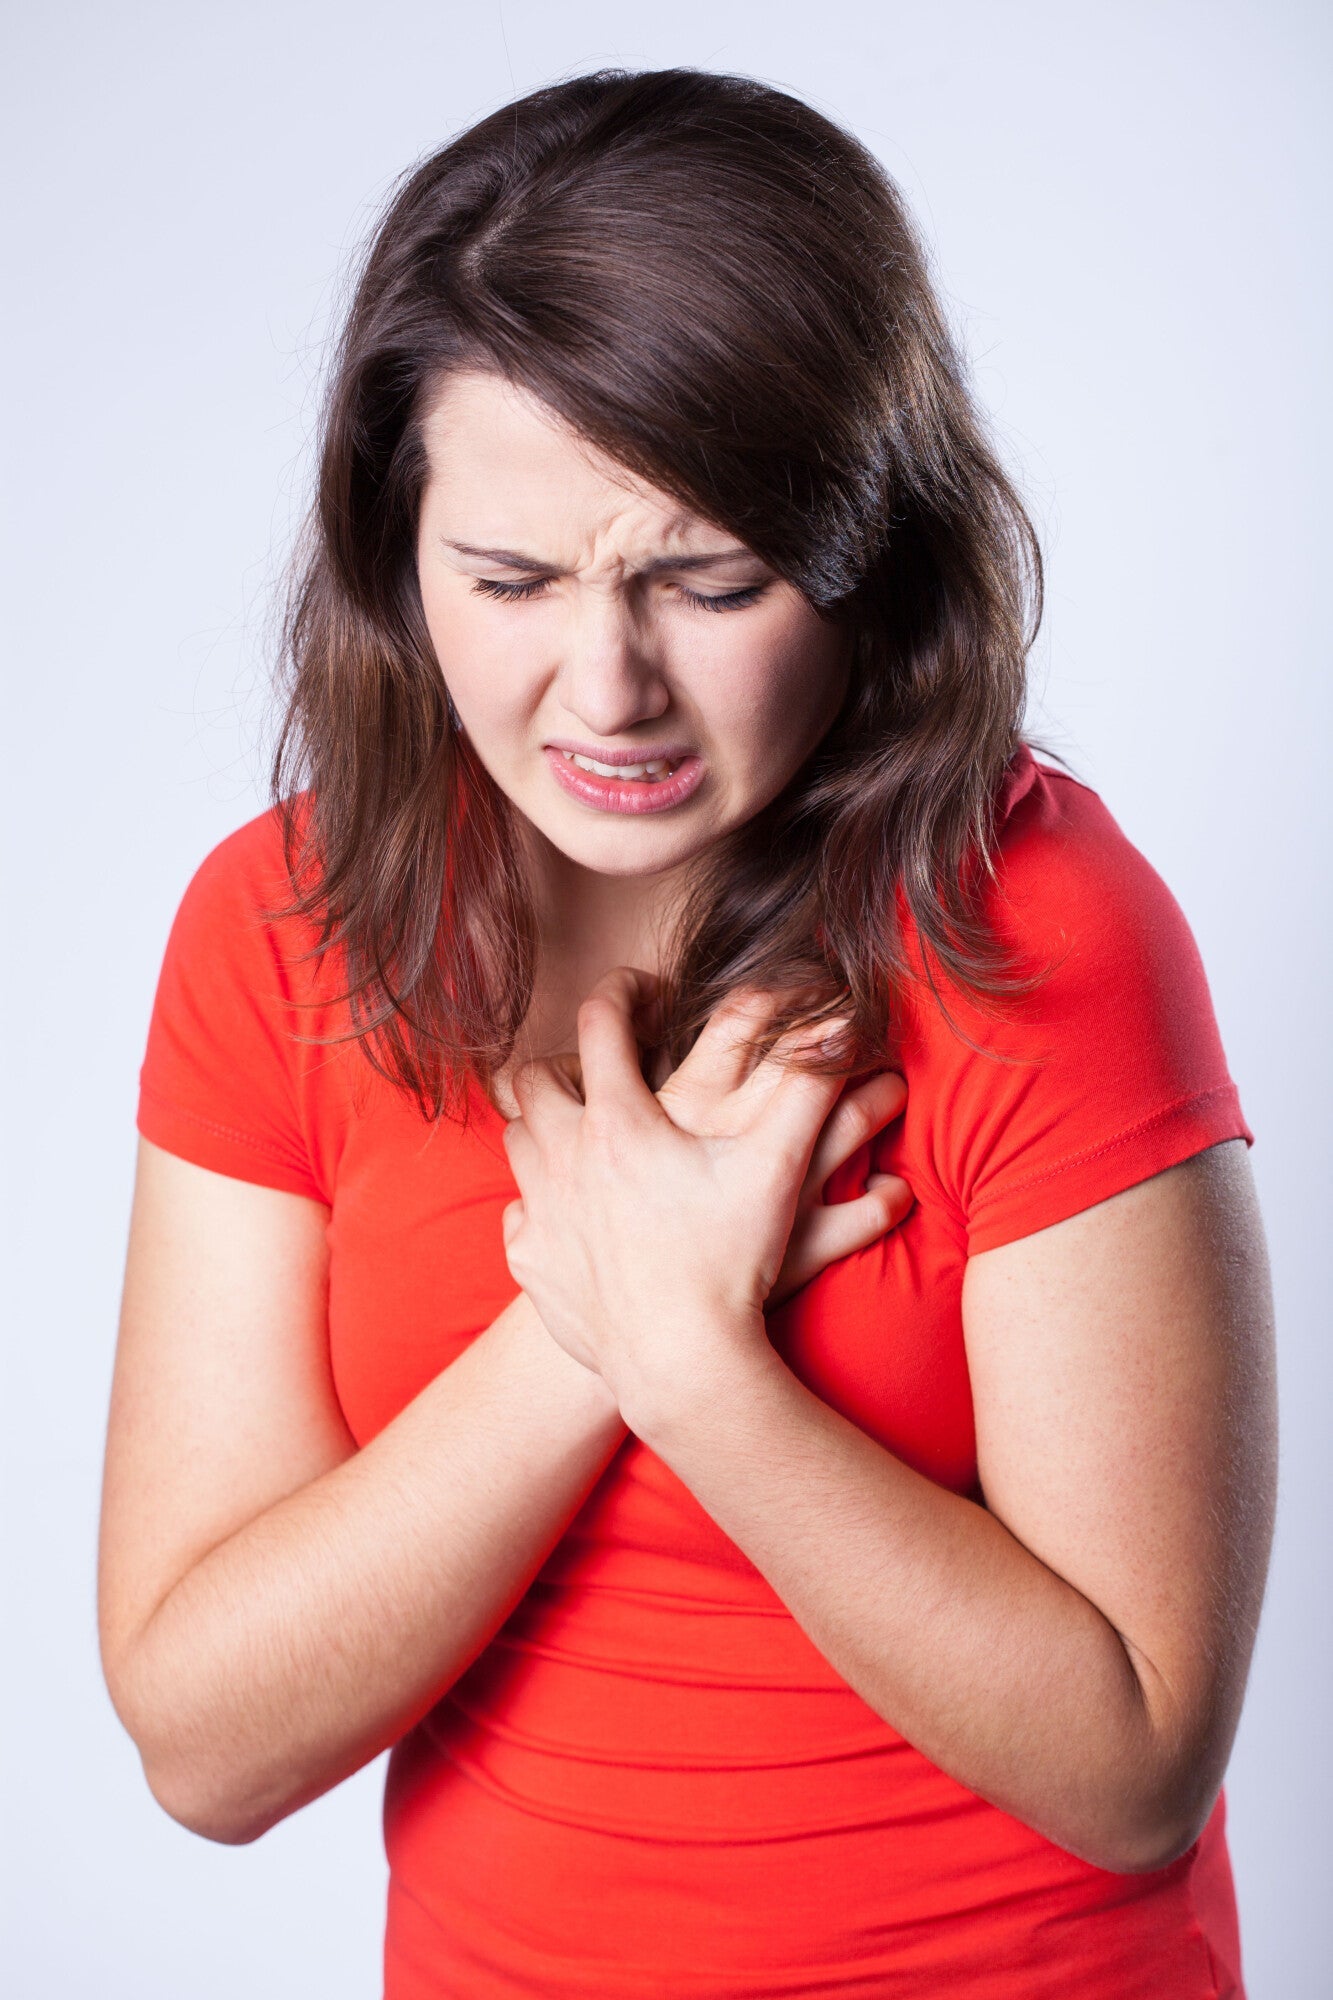 Does Throwing Up Help Heartburn? - GerdLi